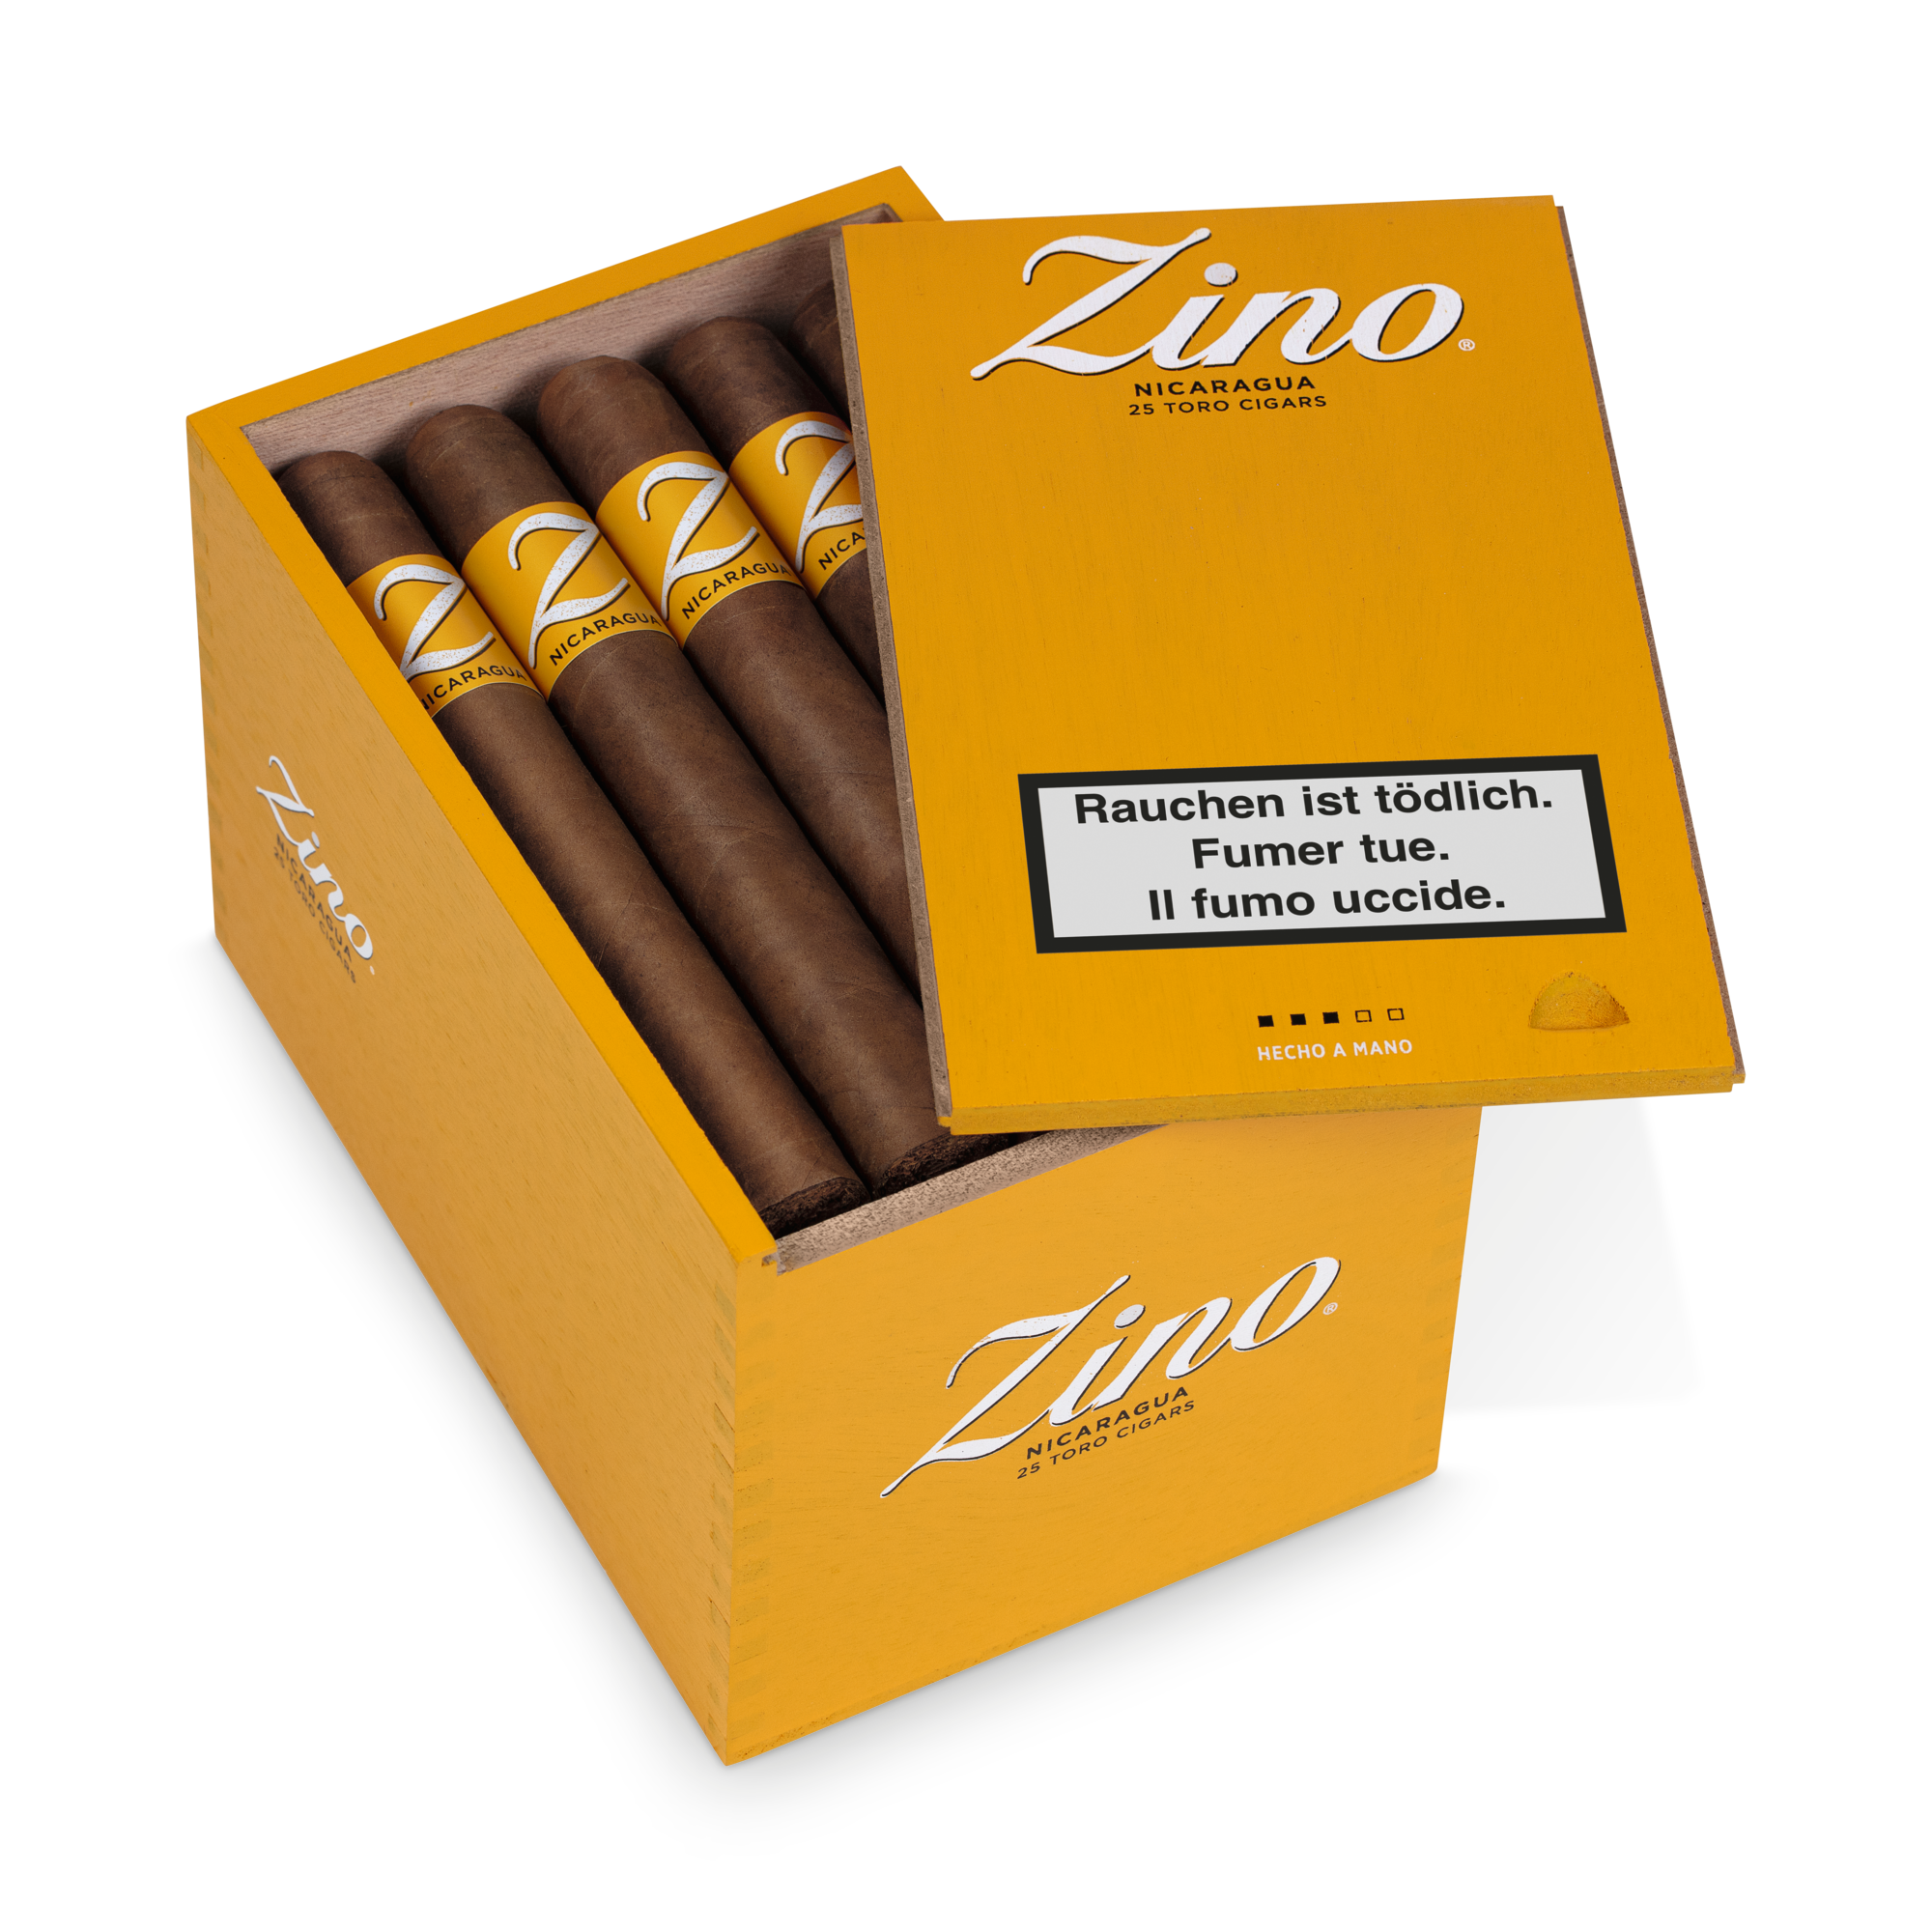 Zino Nicaragua Toro Zigarren 25er Box geöffnet